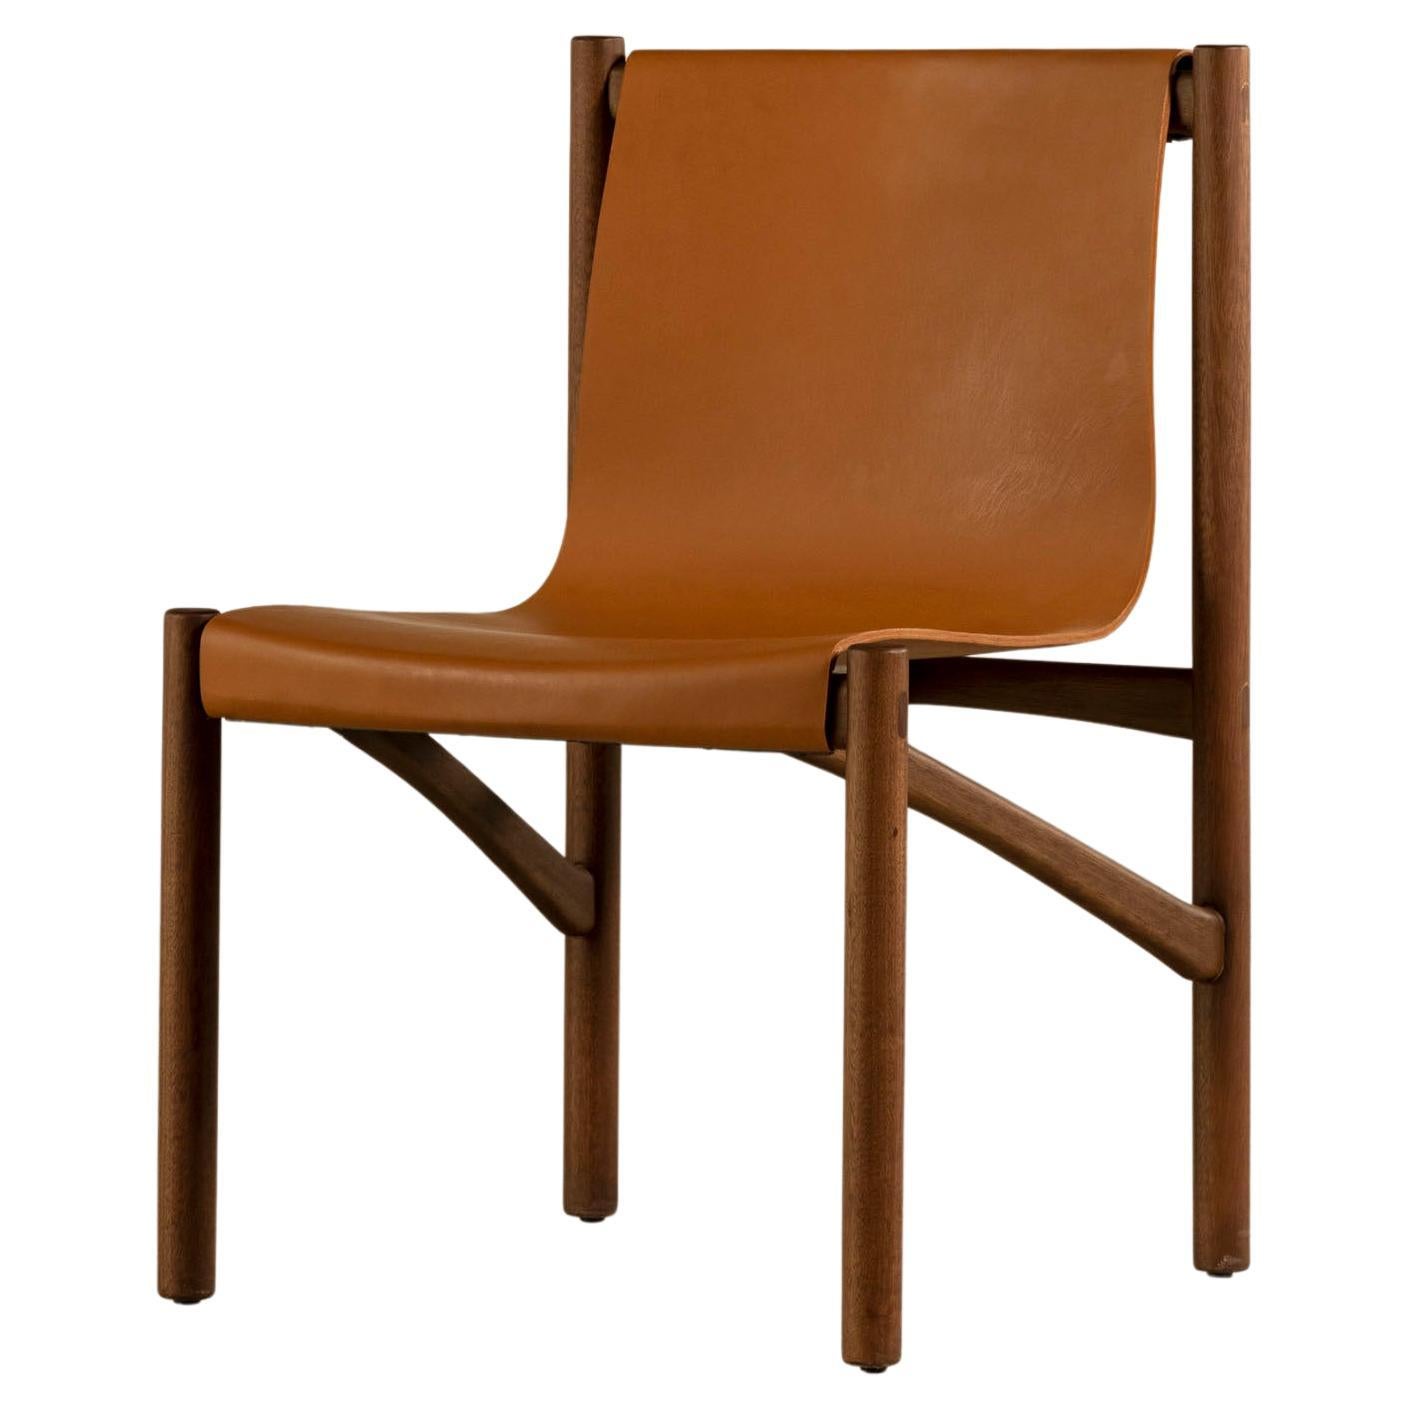 Chaise "Frevo" de Ronald Sasson, design contemporain brésilien